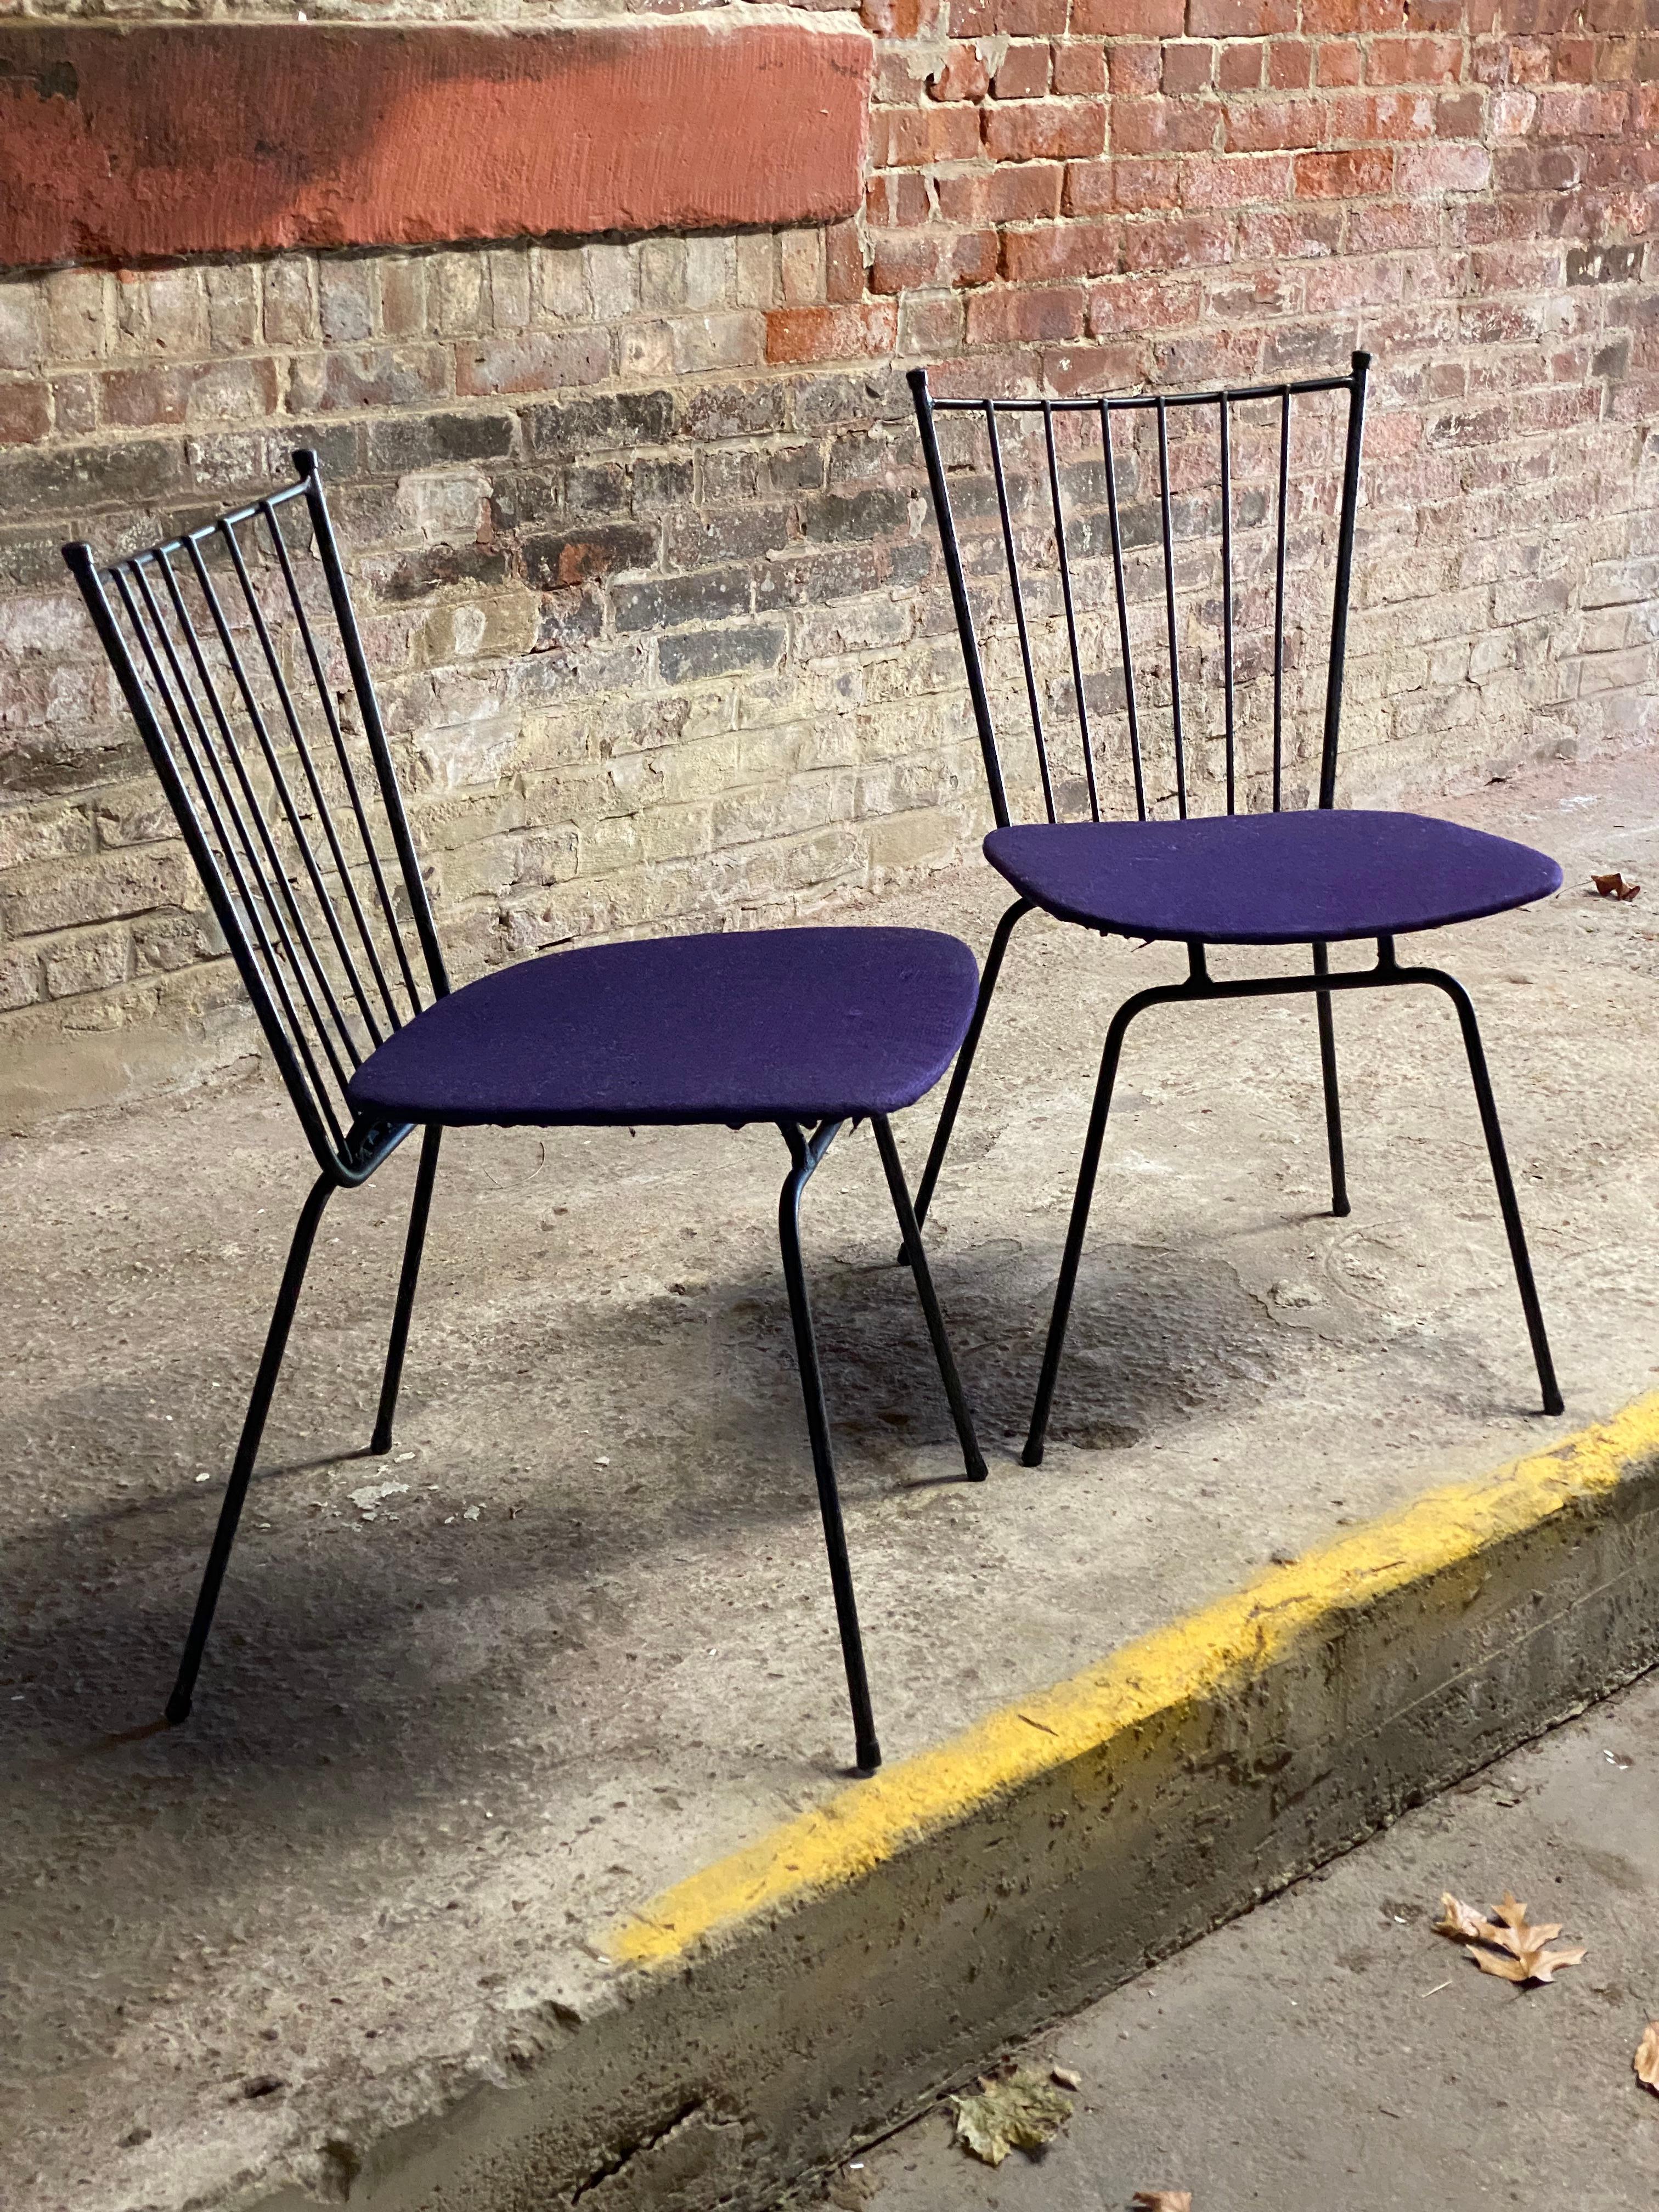 Une très belle paire de chaises latérales à dossier en éventail. Elles sont à la hauteur d'une chaise de salle à manger et peuvent également être utilisées comme chaise d'appoint n'importe où. Circa 1950-60. La base de la chaise en fer rappelle les